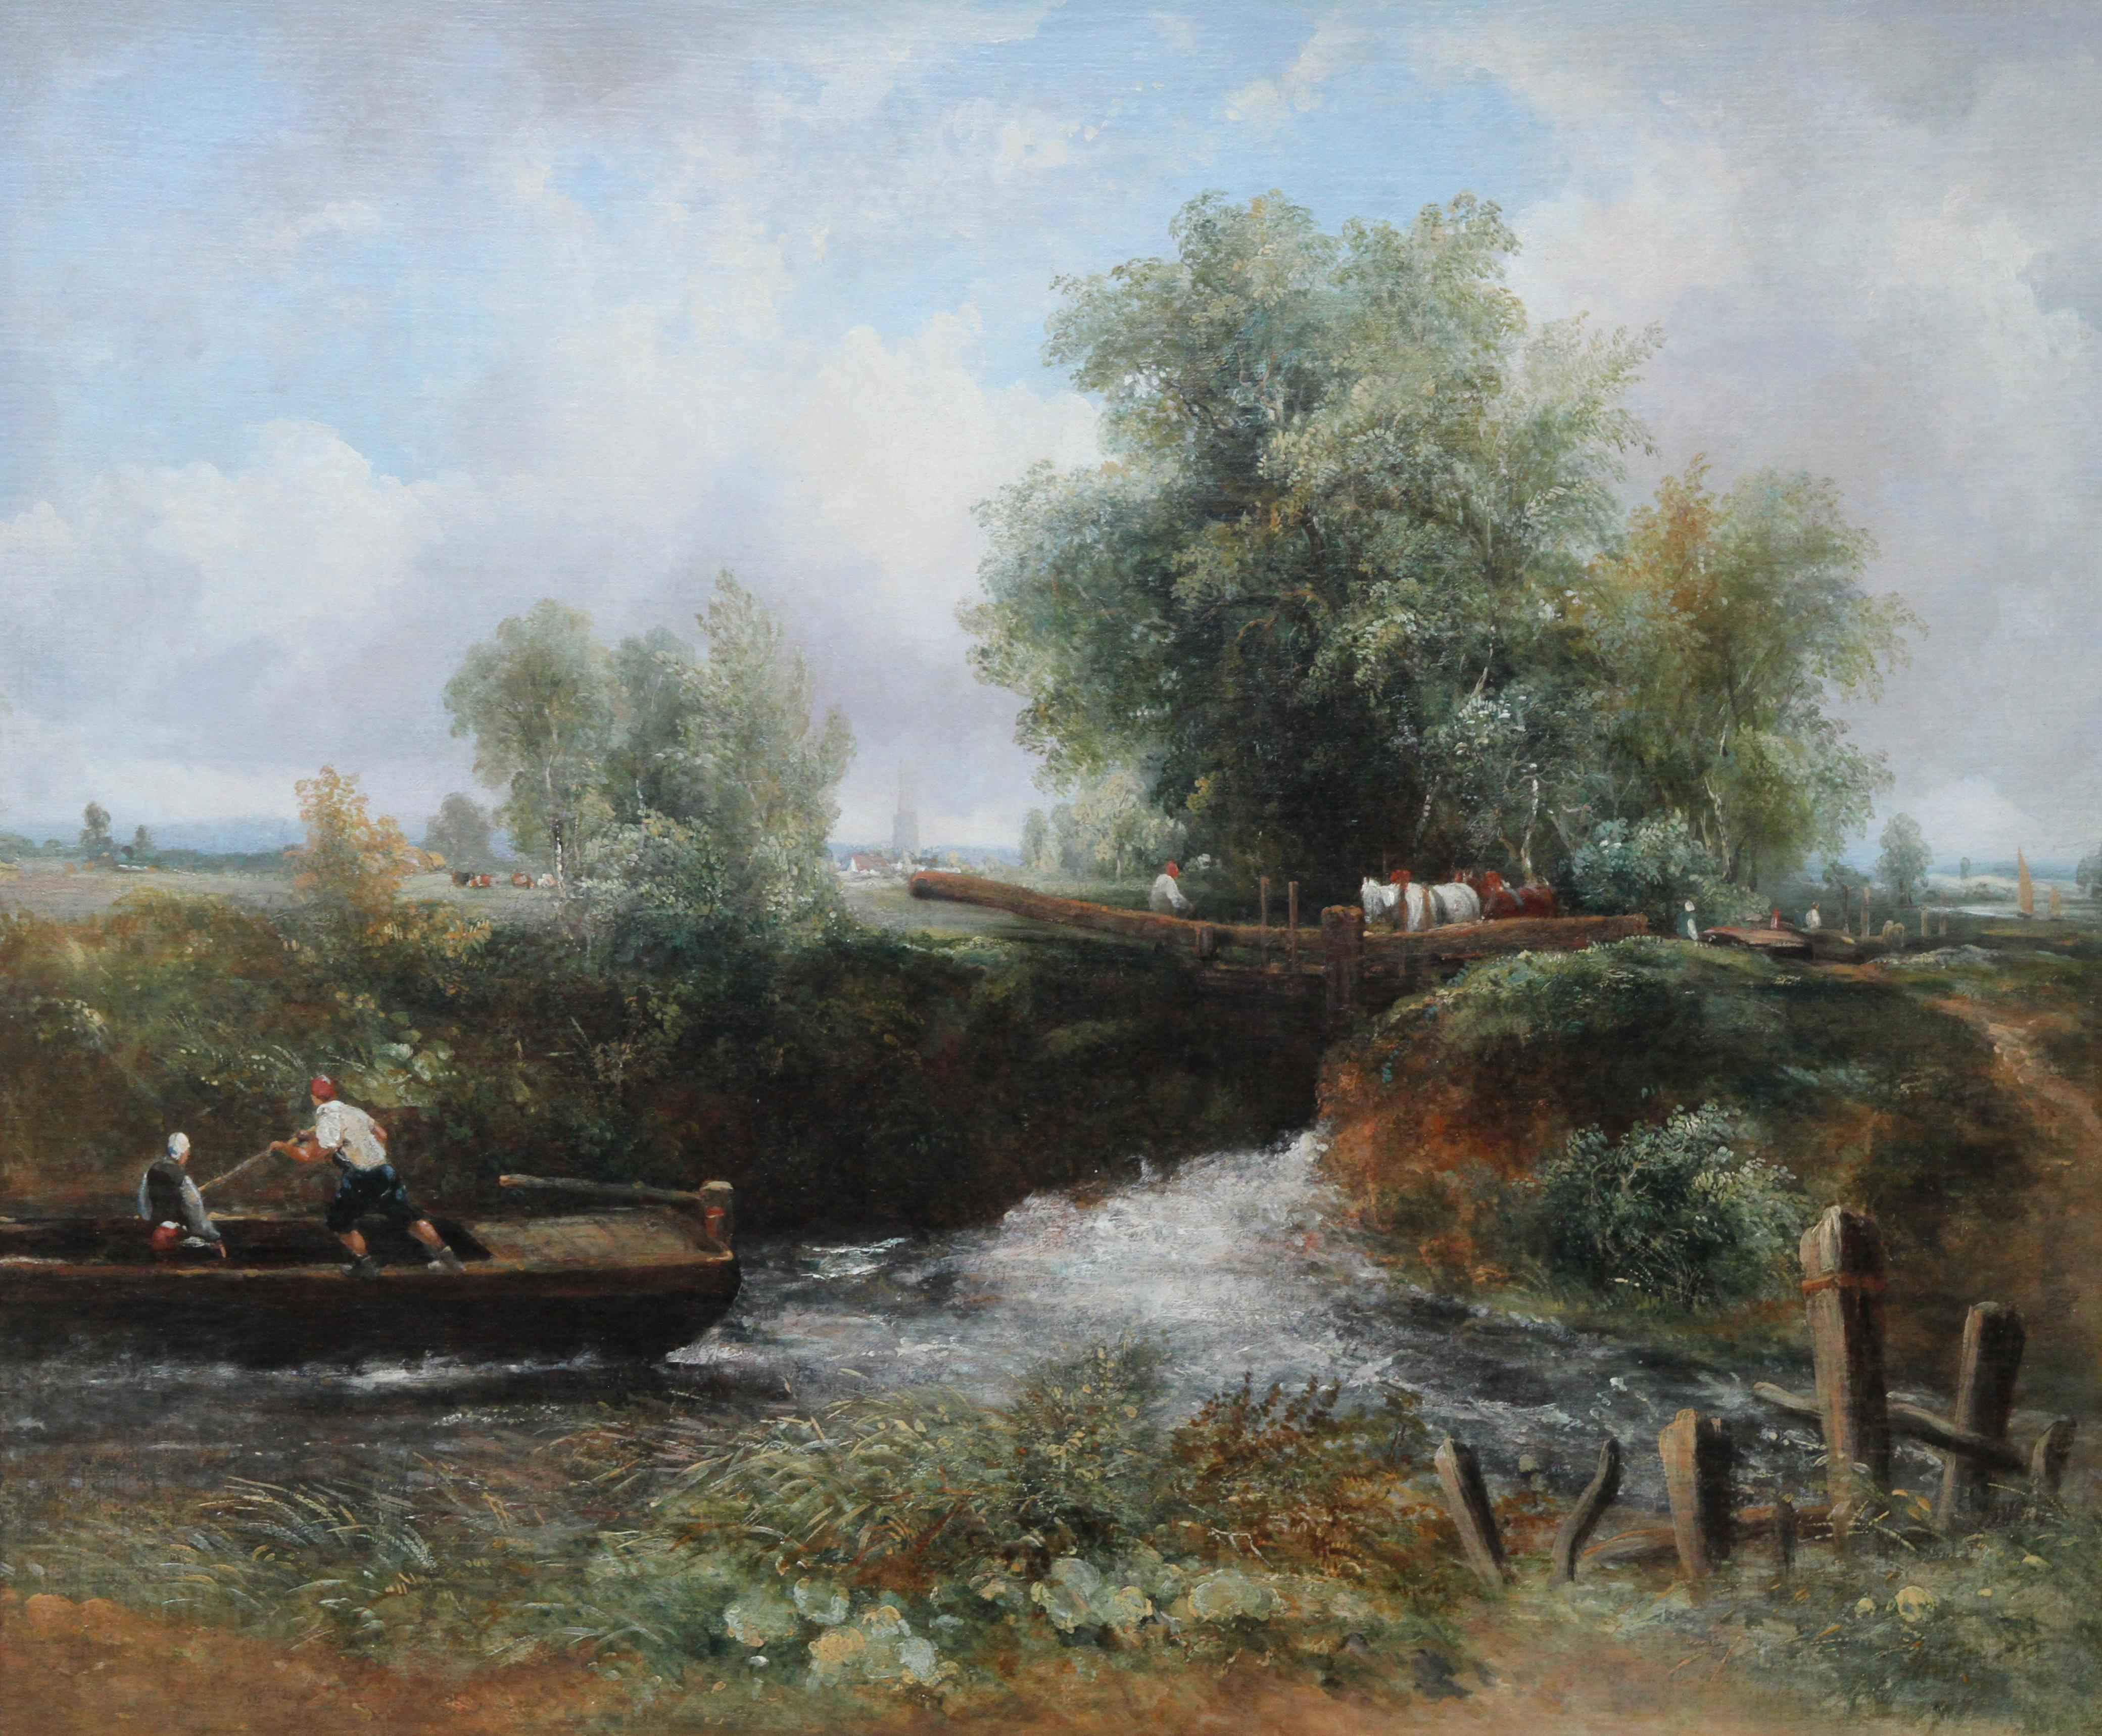 Lock on the Stour – britisches Flusslandschafts-Ölgemälde des 19. Jahrhunderts – Painting von Frederick Waters Watts